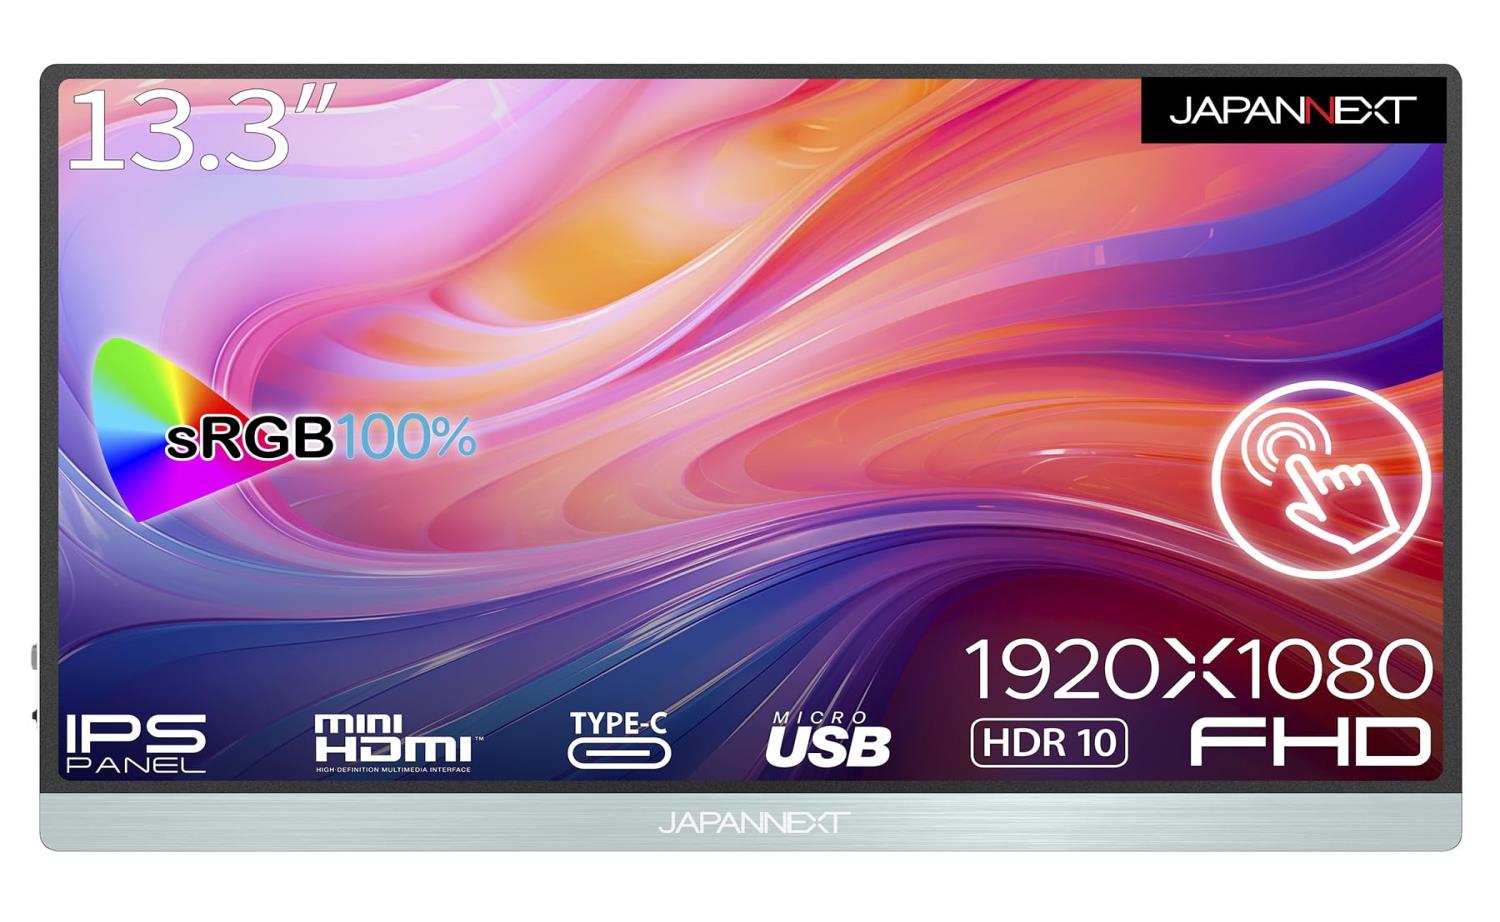 JAPANNEXT 13.3インチ タッチパネル搭載 フルHD(1920x1080) モバイルモニター JN-MD-i133FHDR-T USB Type-C miniHDMI sRGB100% USB OTG対応 スマートケース付き